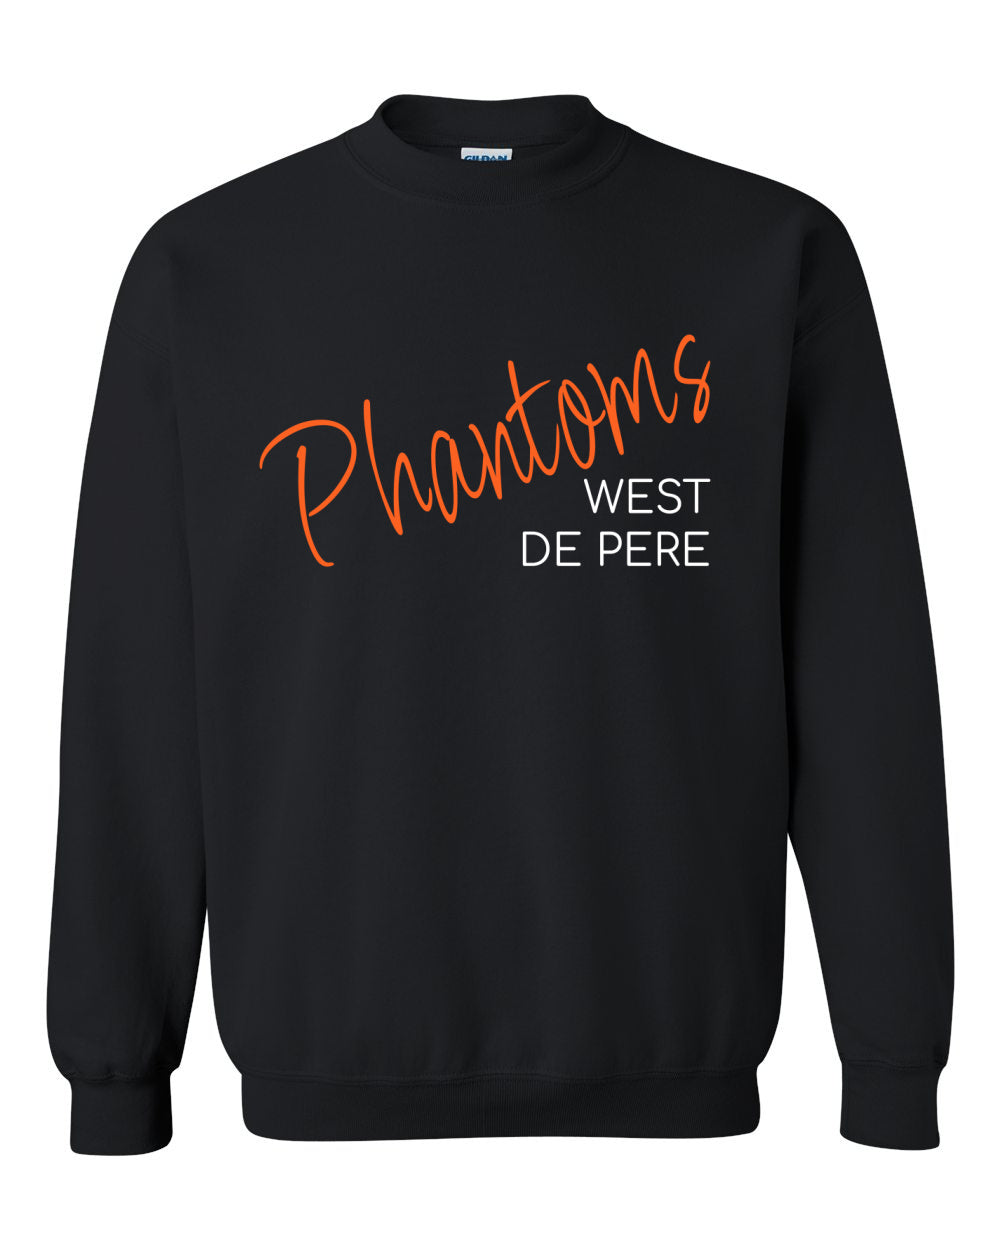 West De Pere Phantoms Merch - Tees, Long Sleeve Tee, Crewneck or Hoodie - Phantoms Script